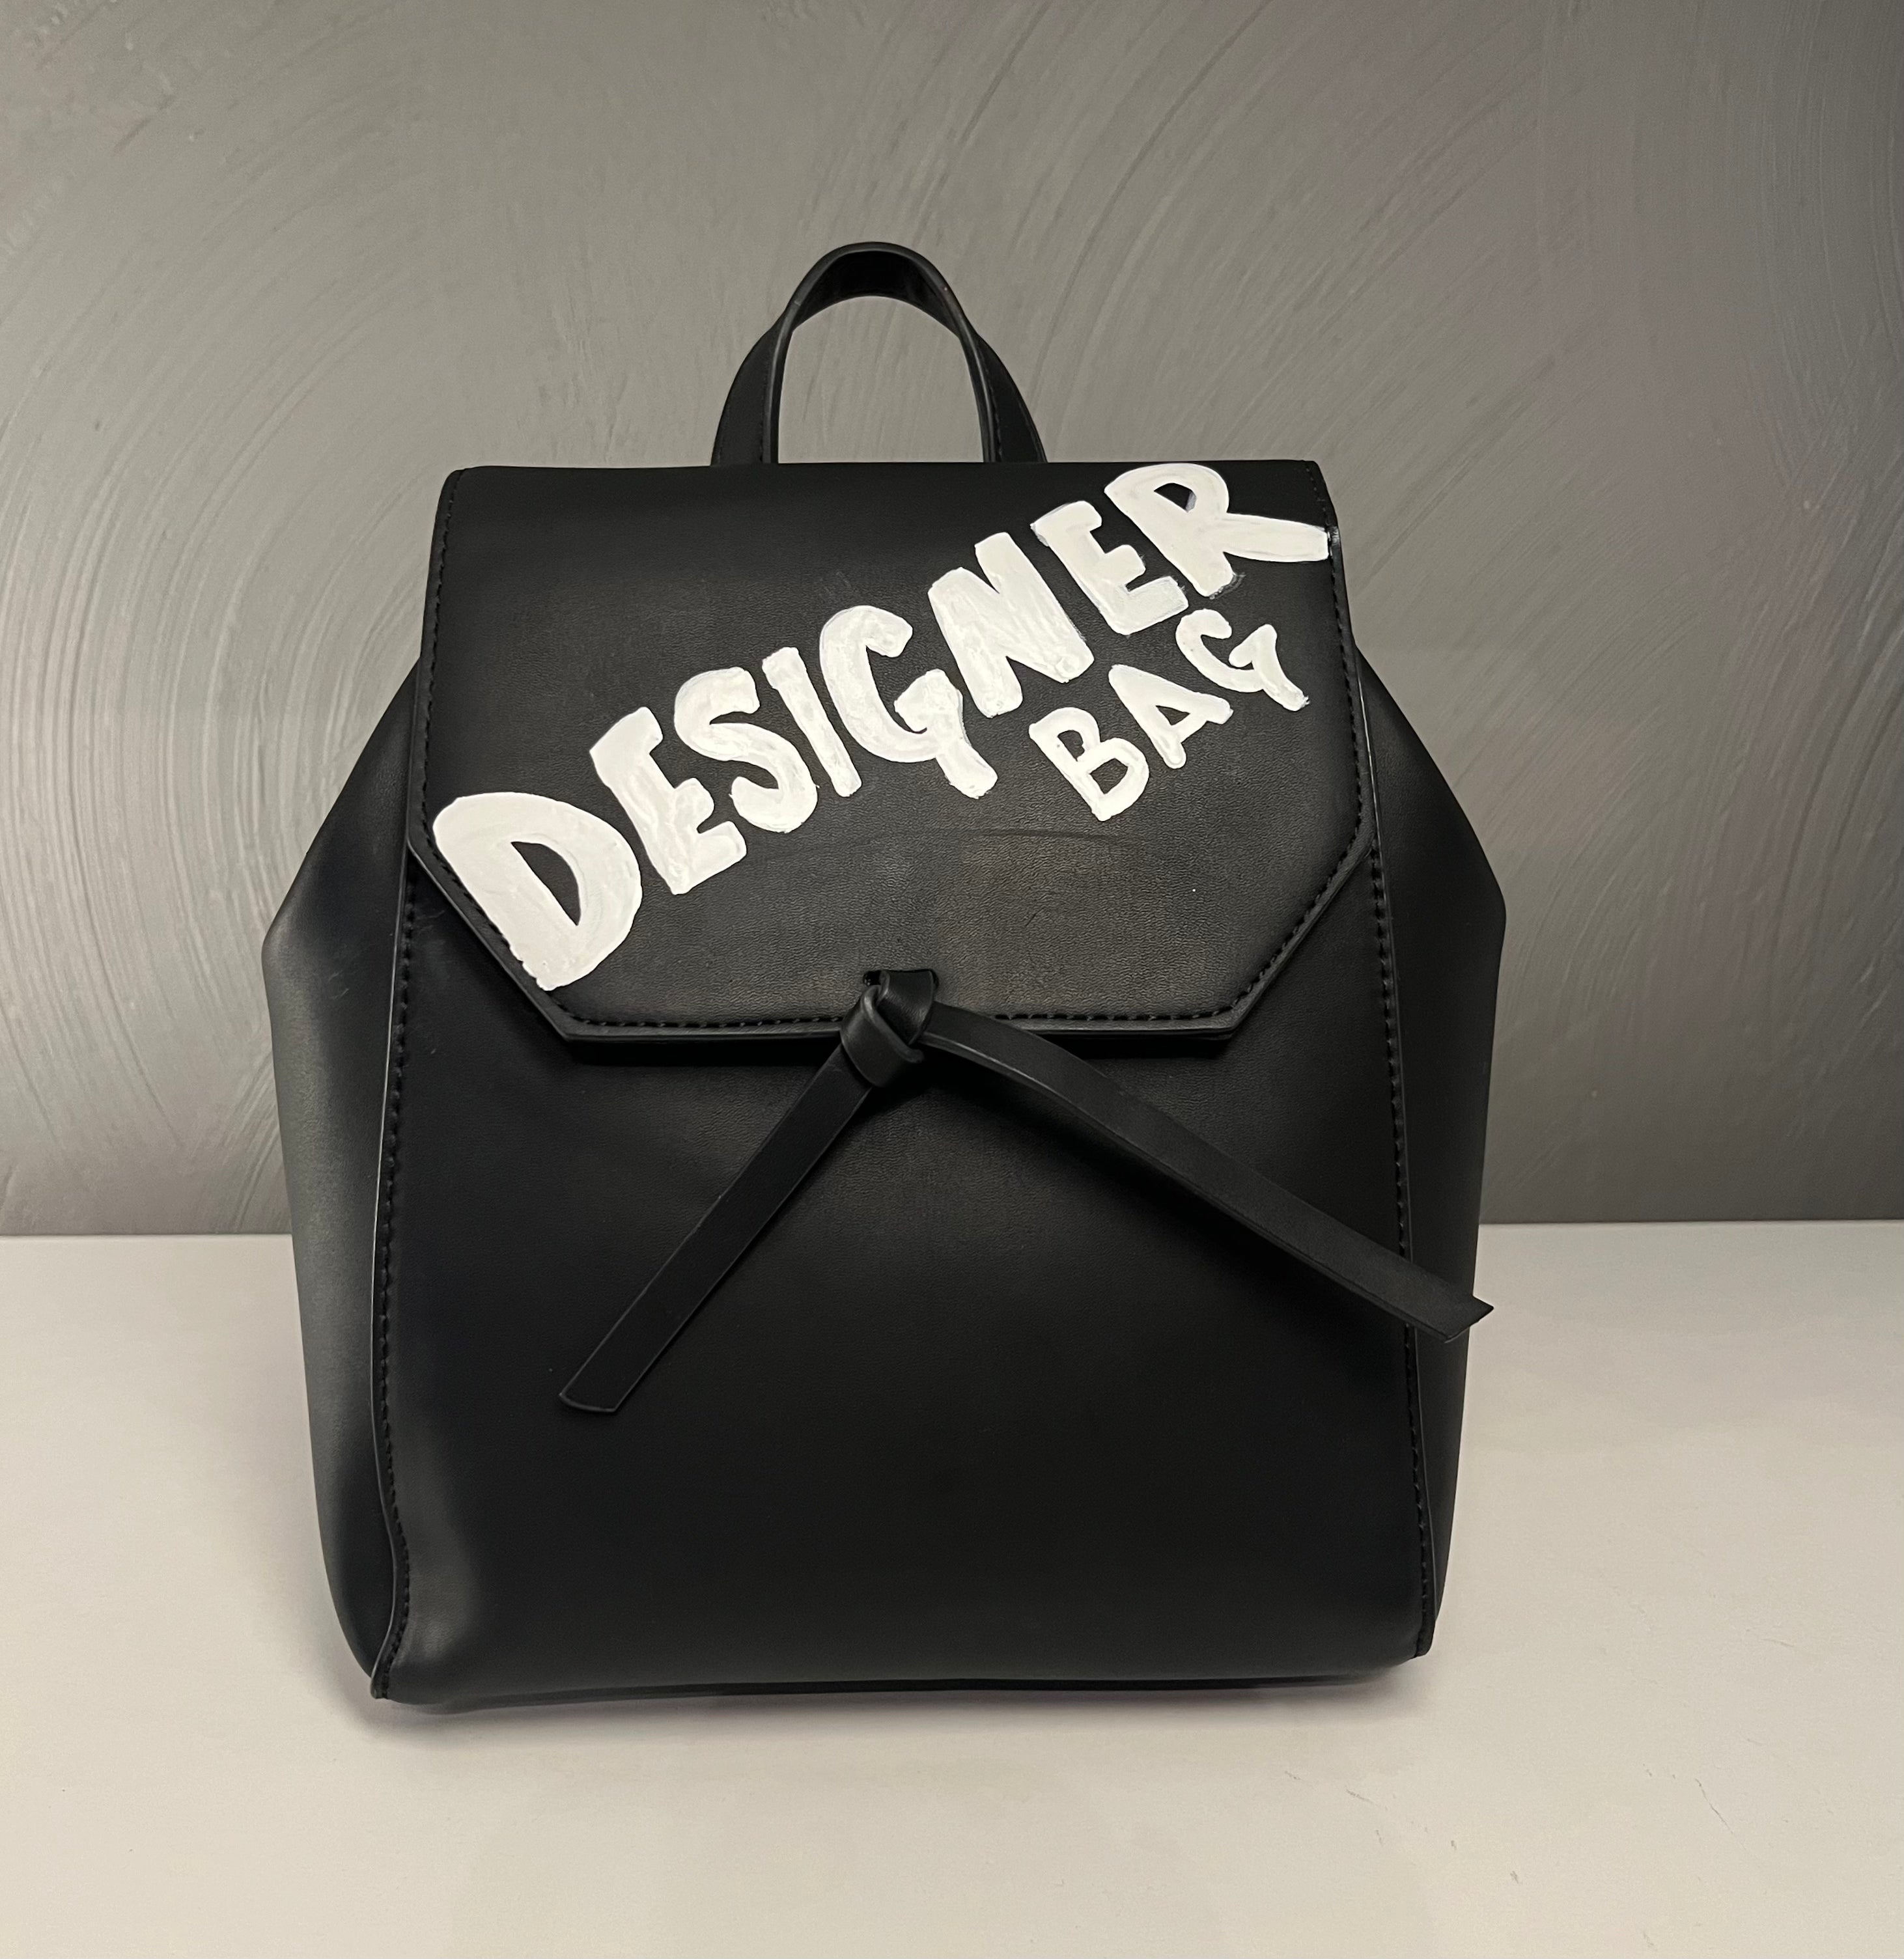 I got your back. Designer bag.